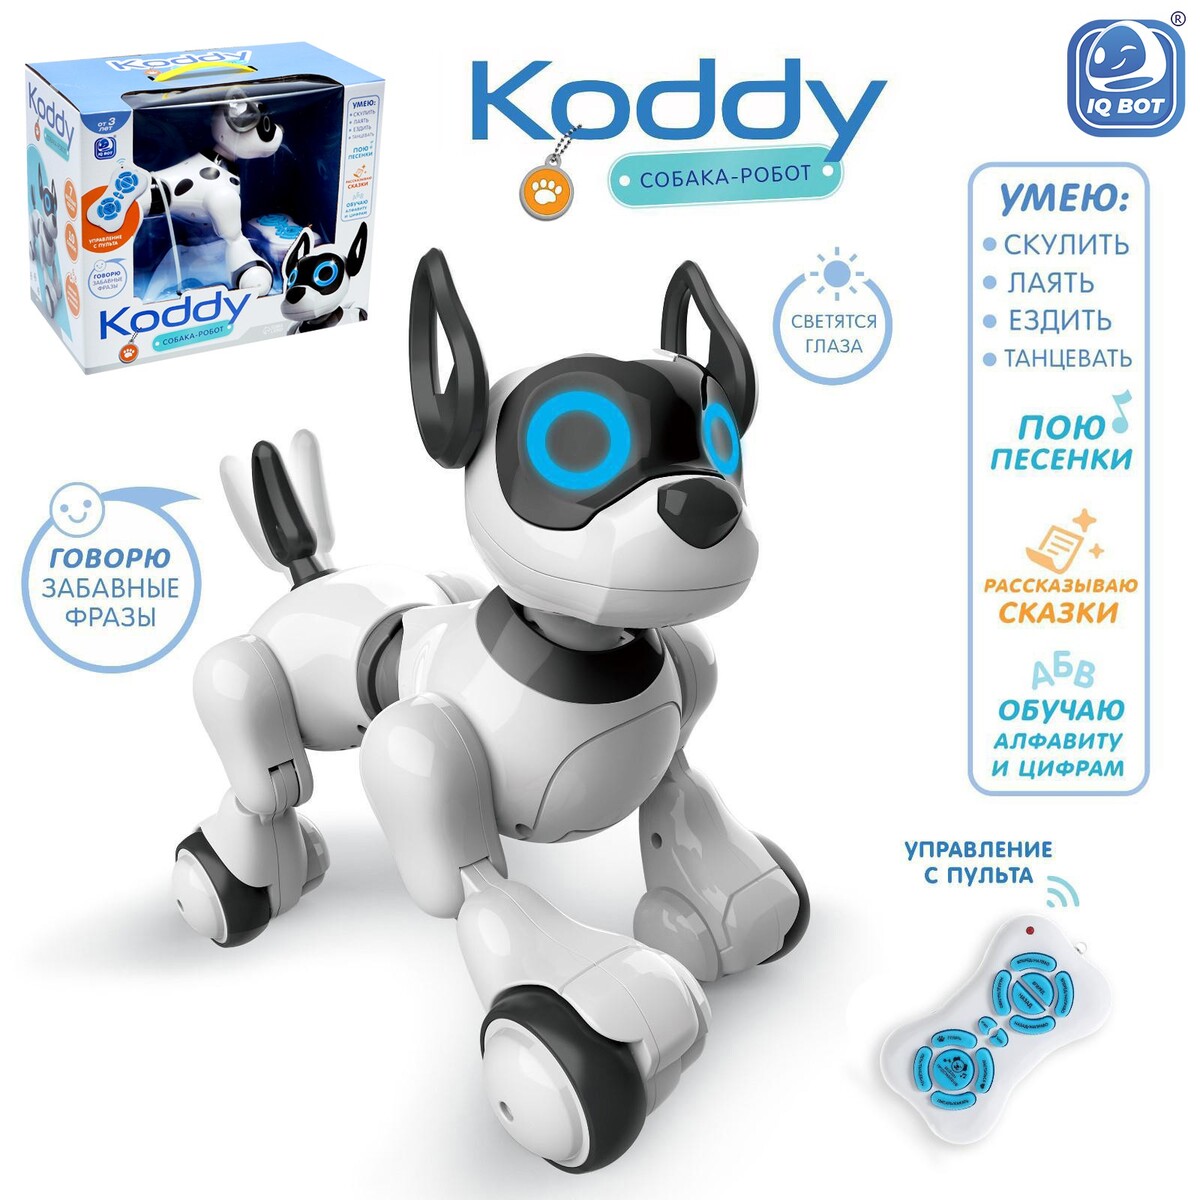 Робот собака koddy iq bot, на пульте управления, интерактивный: звук, свет, танцующий, музыкальный, на аккумуляторе робот игрушка радиоуправляемая собака свет и звук эффекты 4376315